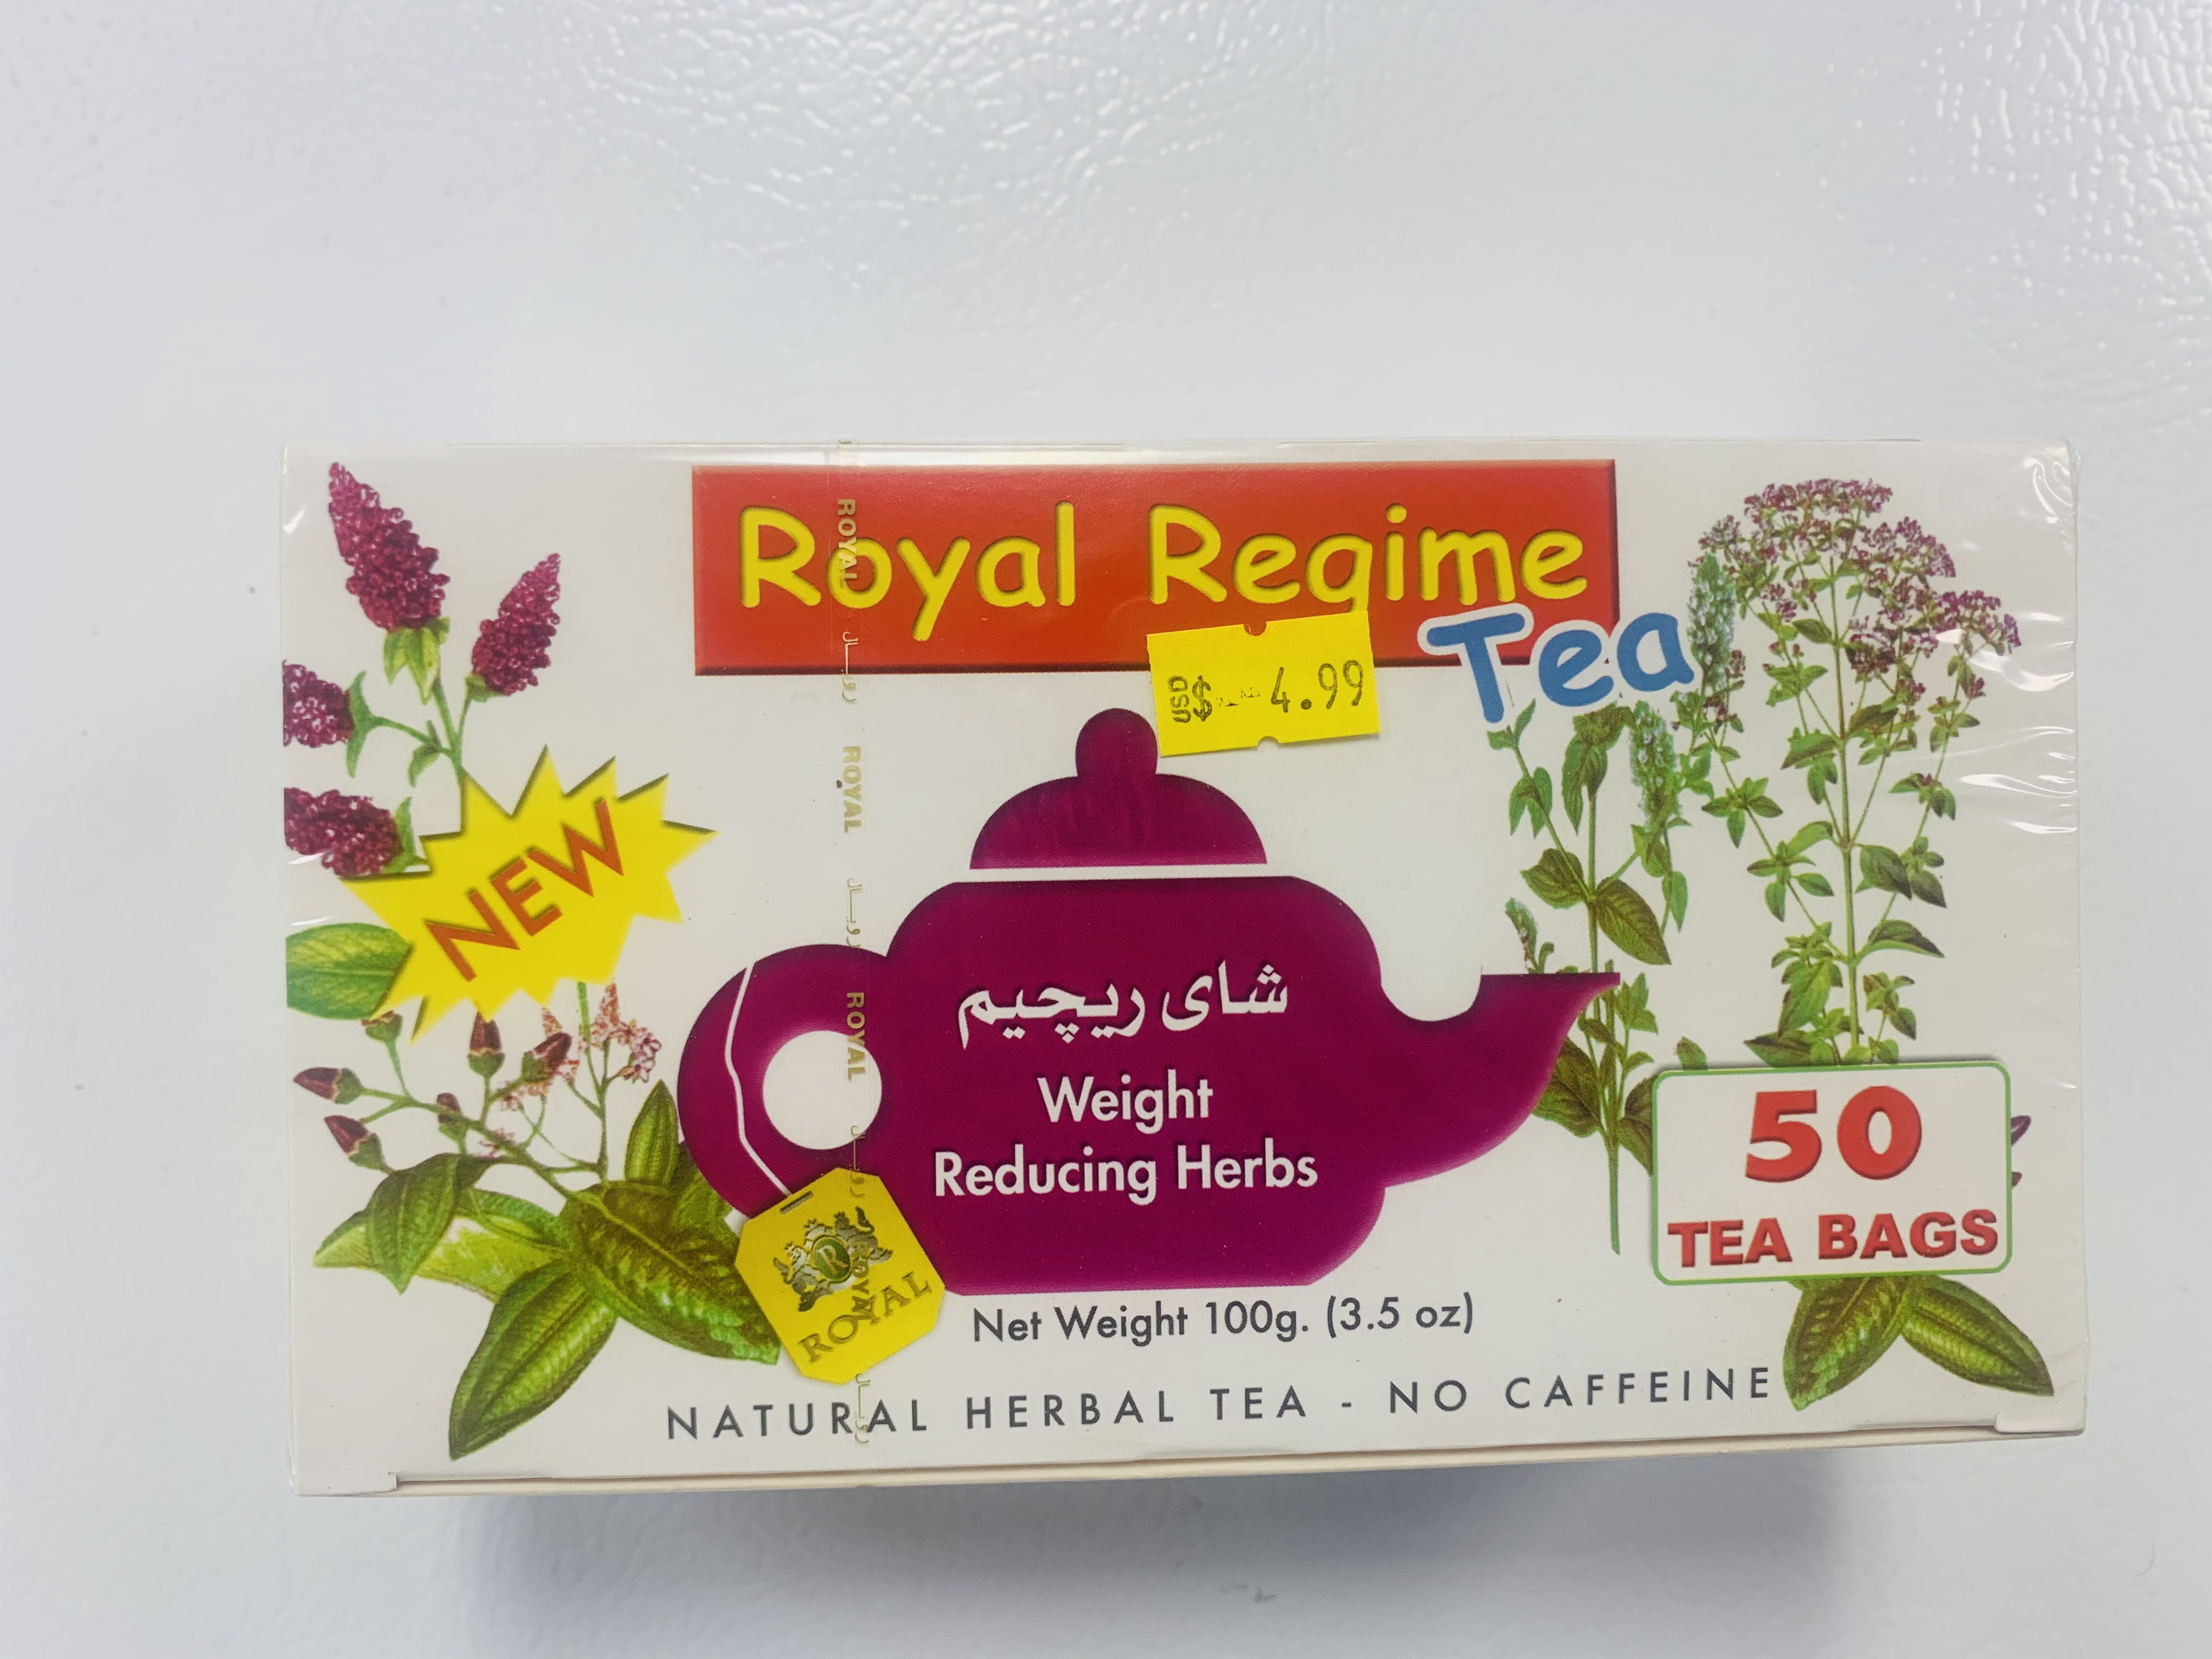 Royal Regime Tea<br>4.99$